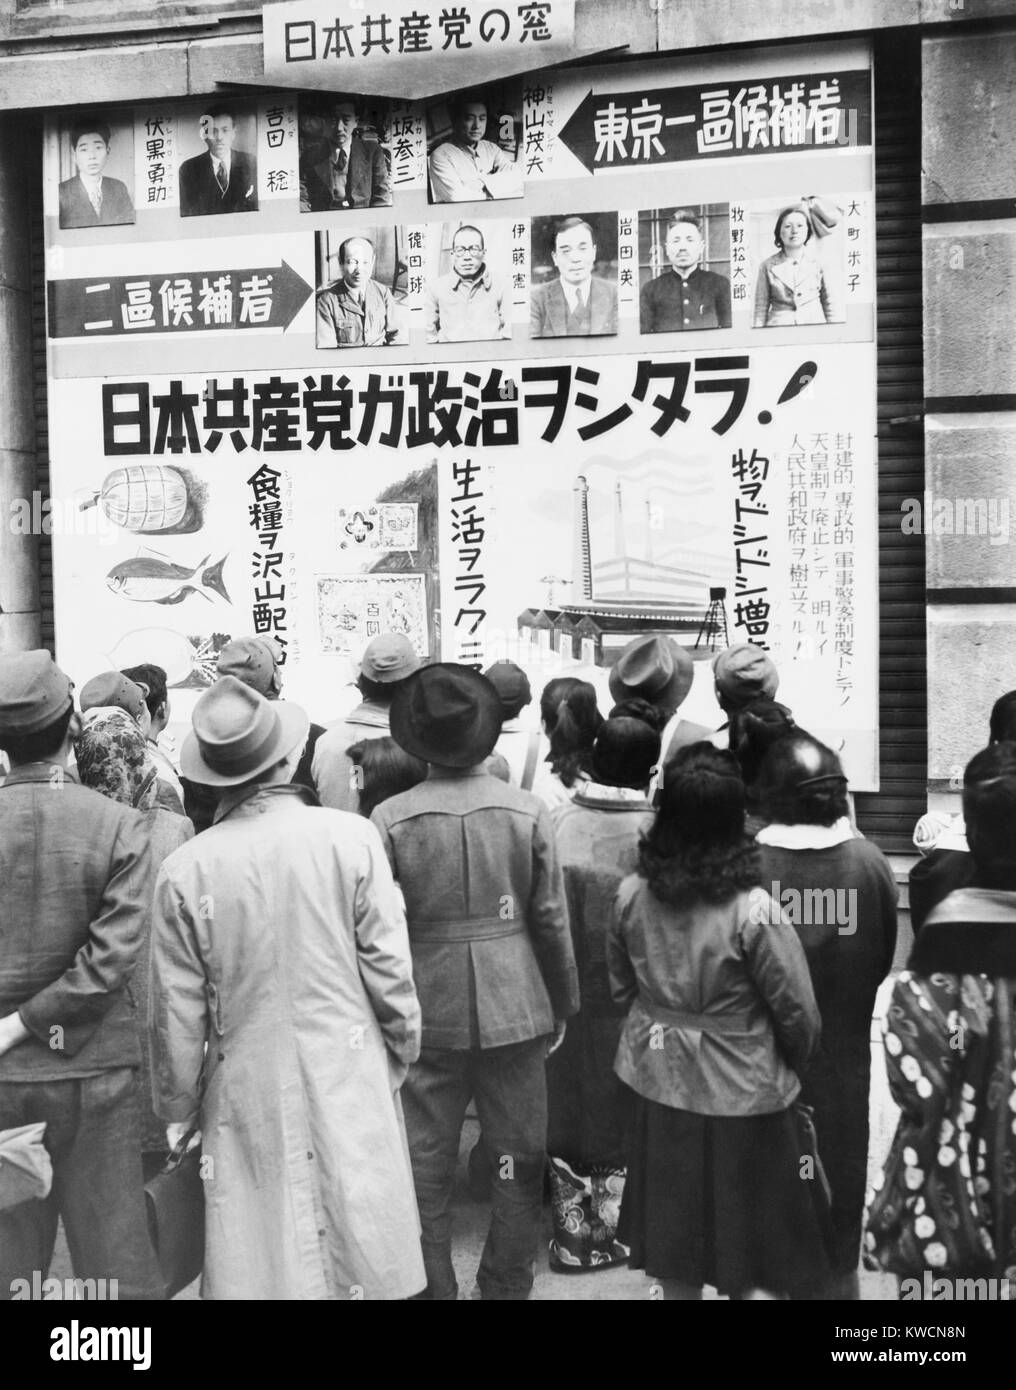 Japanische Leute lesen einer Kommunistischen Partei Wahlplakat außerhalb des Mitsukoshi Kaufhaus. Tokio, Japan. April 16, 1946. - (BSLOC 2014 15 132) Stockfoto